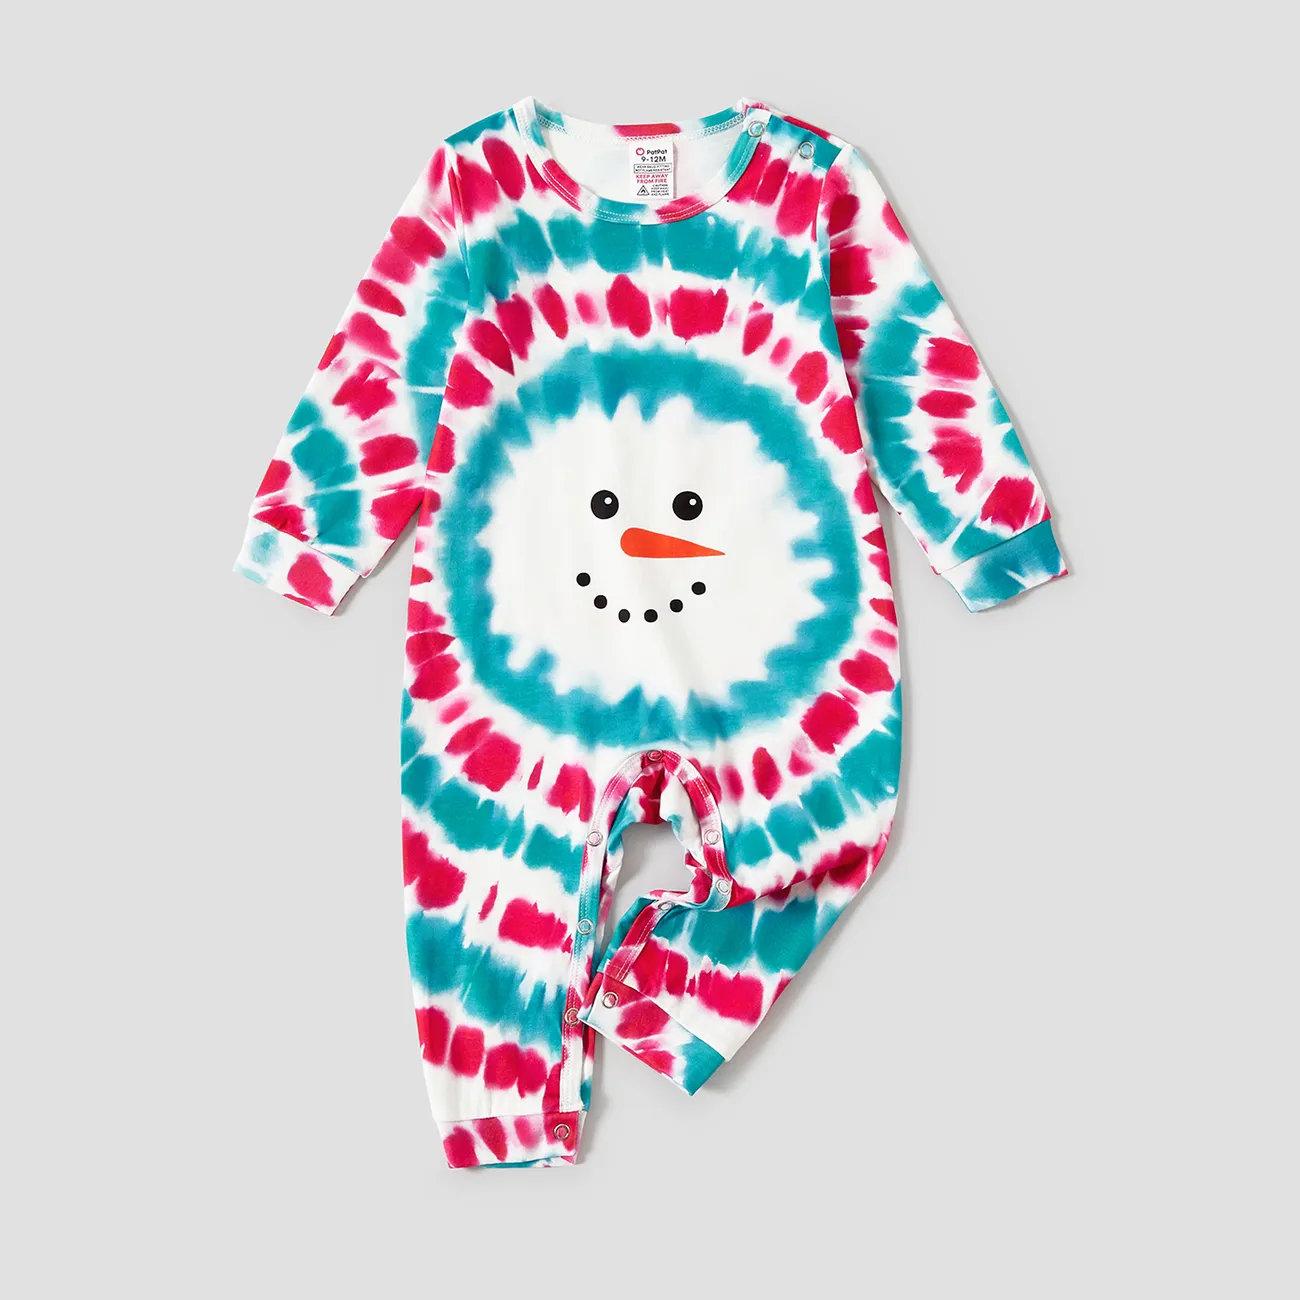 Christmas Snowman Print Family Matching Colorful Pajamas Sets (Flame Resistant)  big image 1